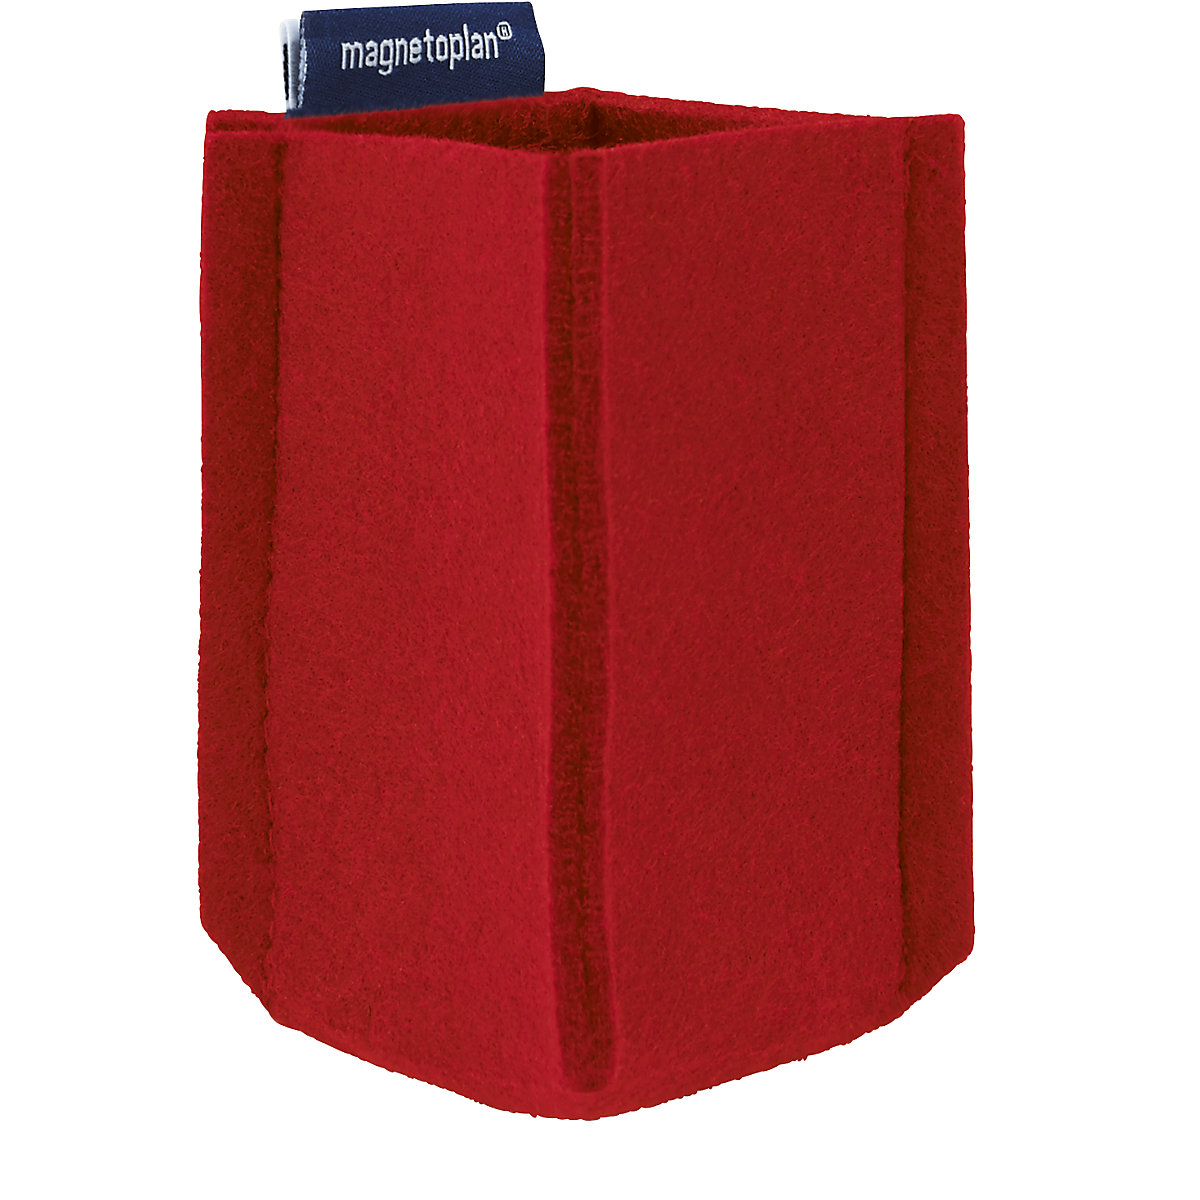 Zásobník na písacie potreby magnetoTray – magnetoplan, SMALL, v x š x h 100 x 60 x 60 mm, červená-5